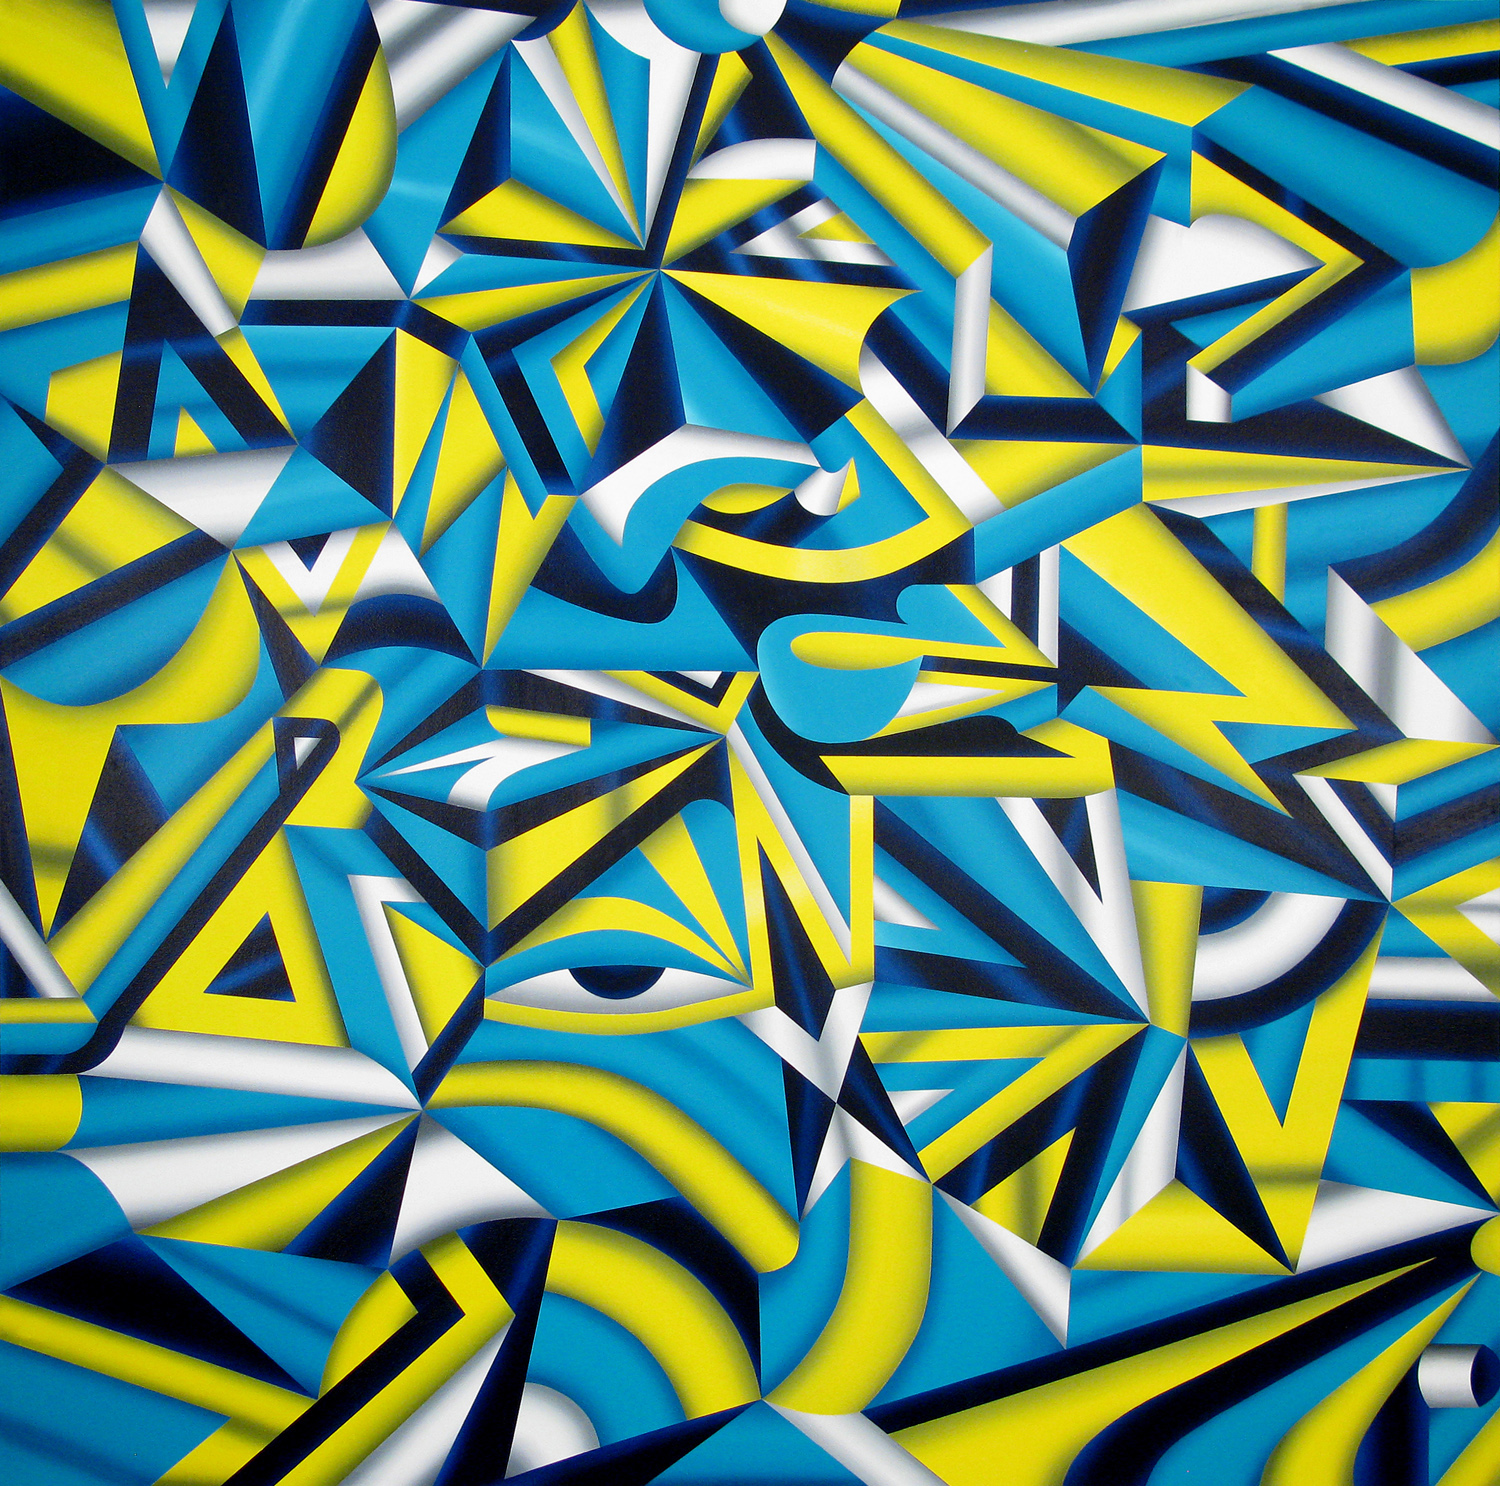  Praefectus Astana (The Dream Team), 2009 acrylic on canvas 72 x 72 inch&nbsp;    